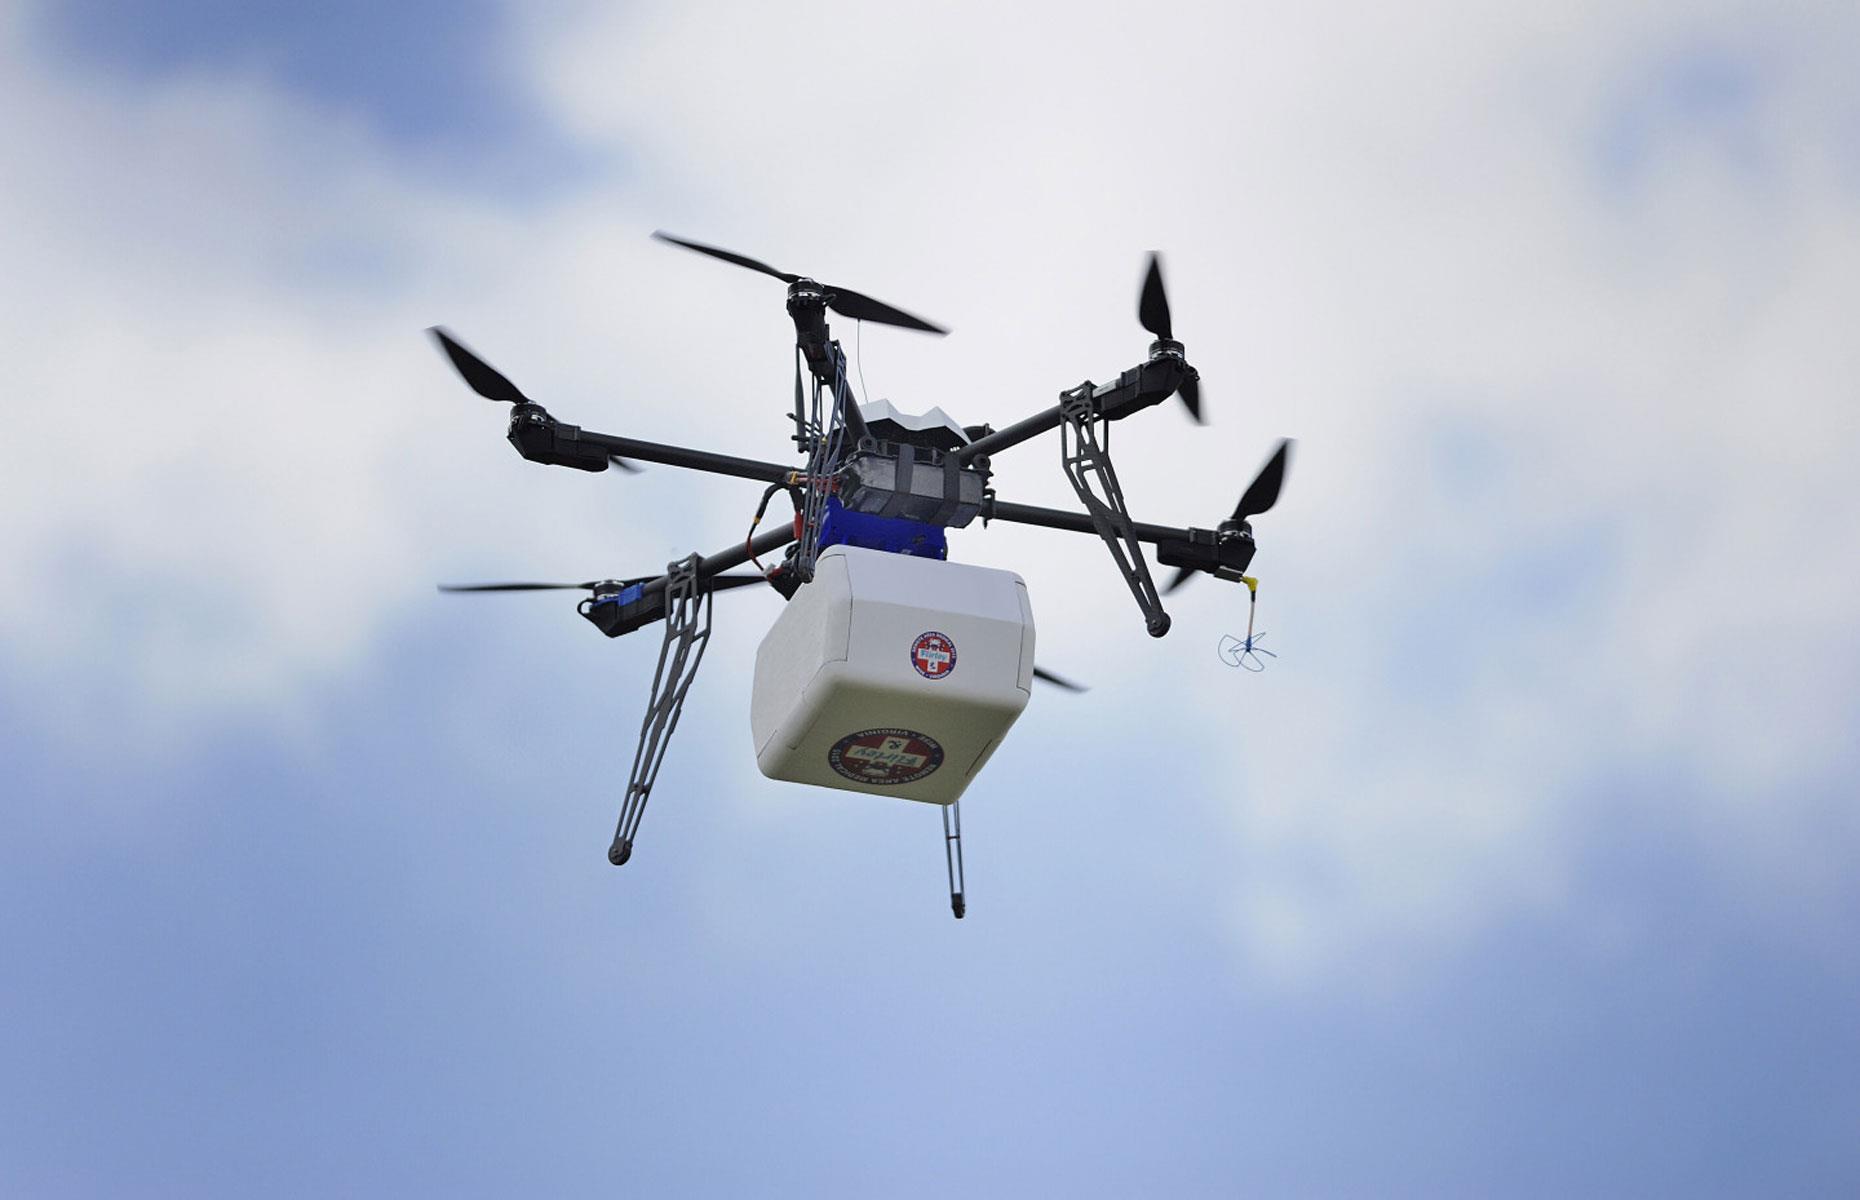 Medicine delivery drones